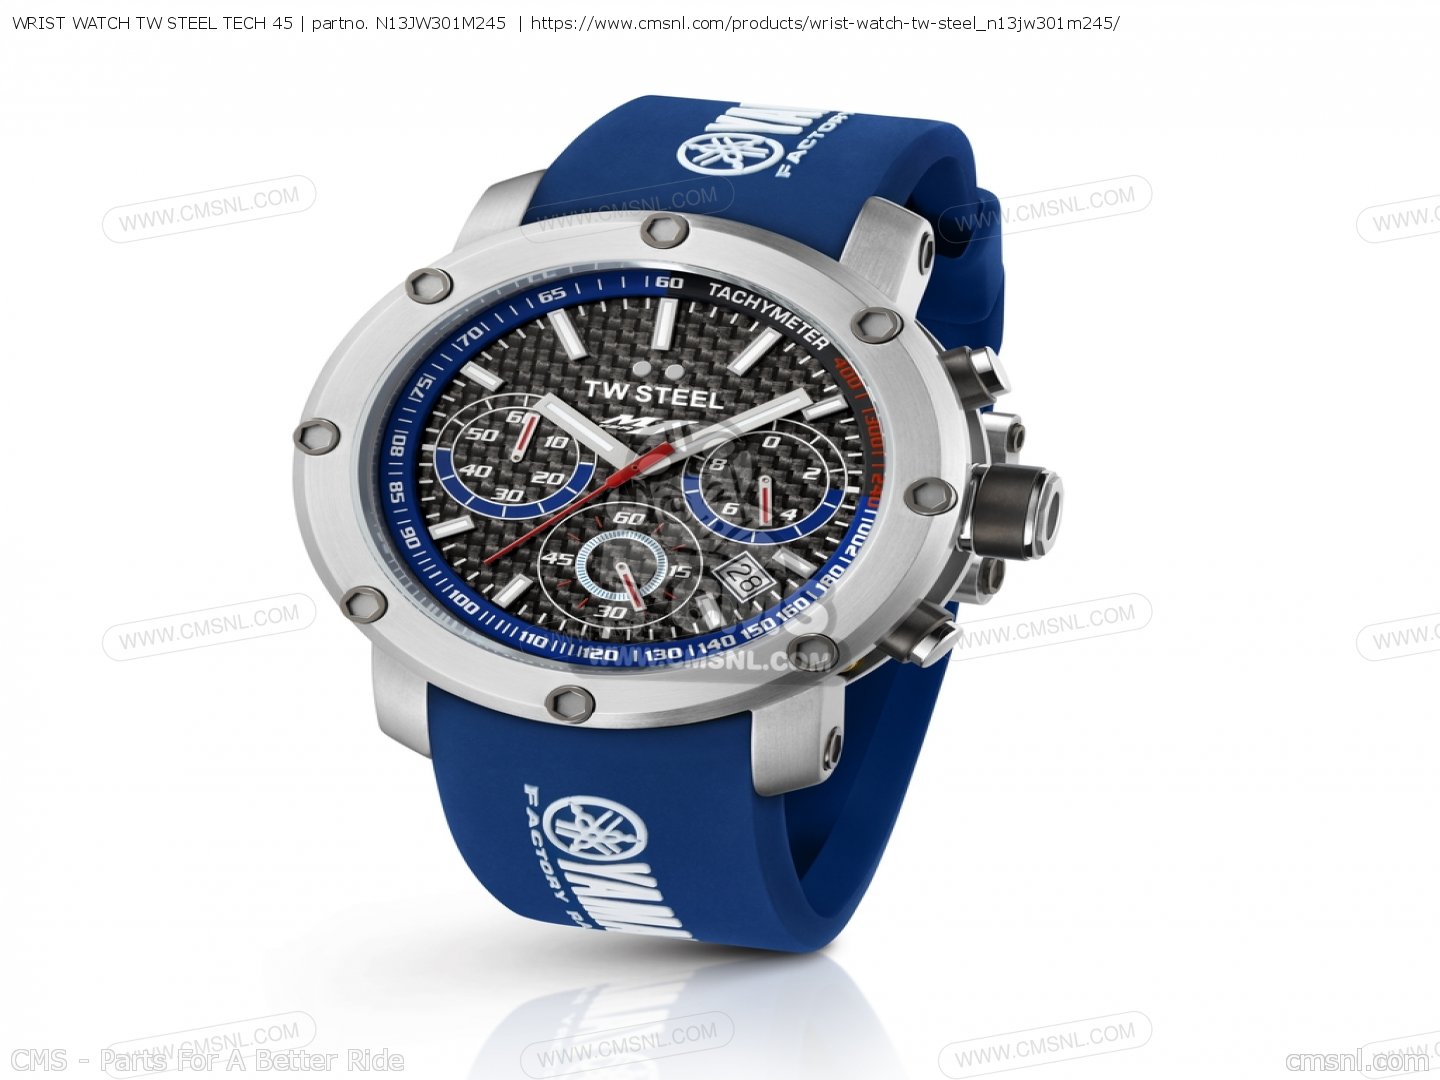 N13jw301m245 Wrist Watch Tw Steel Tech 45 Yamaha Buy The N13 Jw301 M245 At Cmsnl